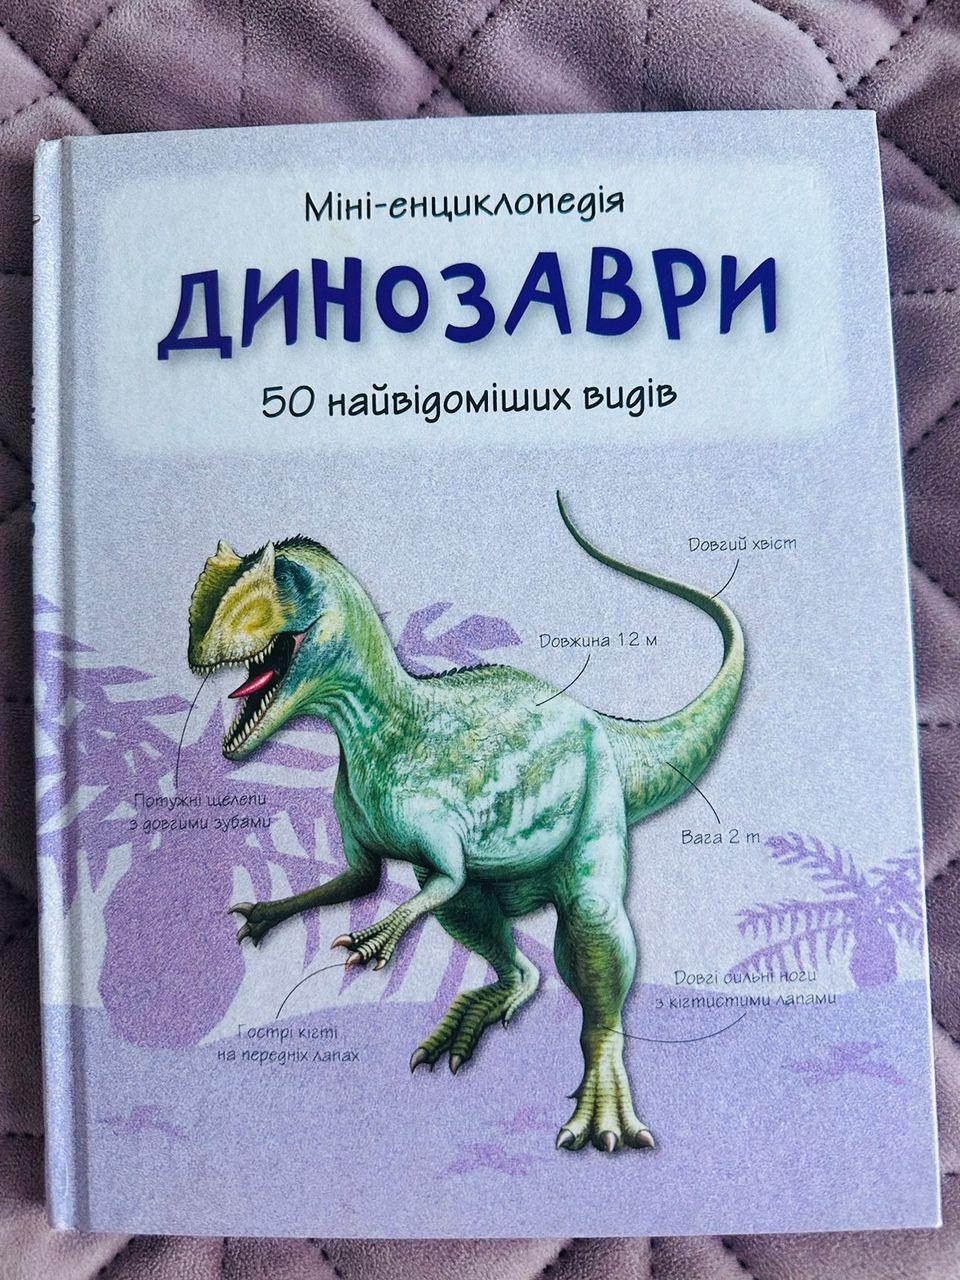 Енциклопедія "Динозаври", на українській мові.